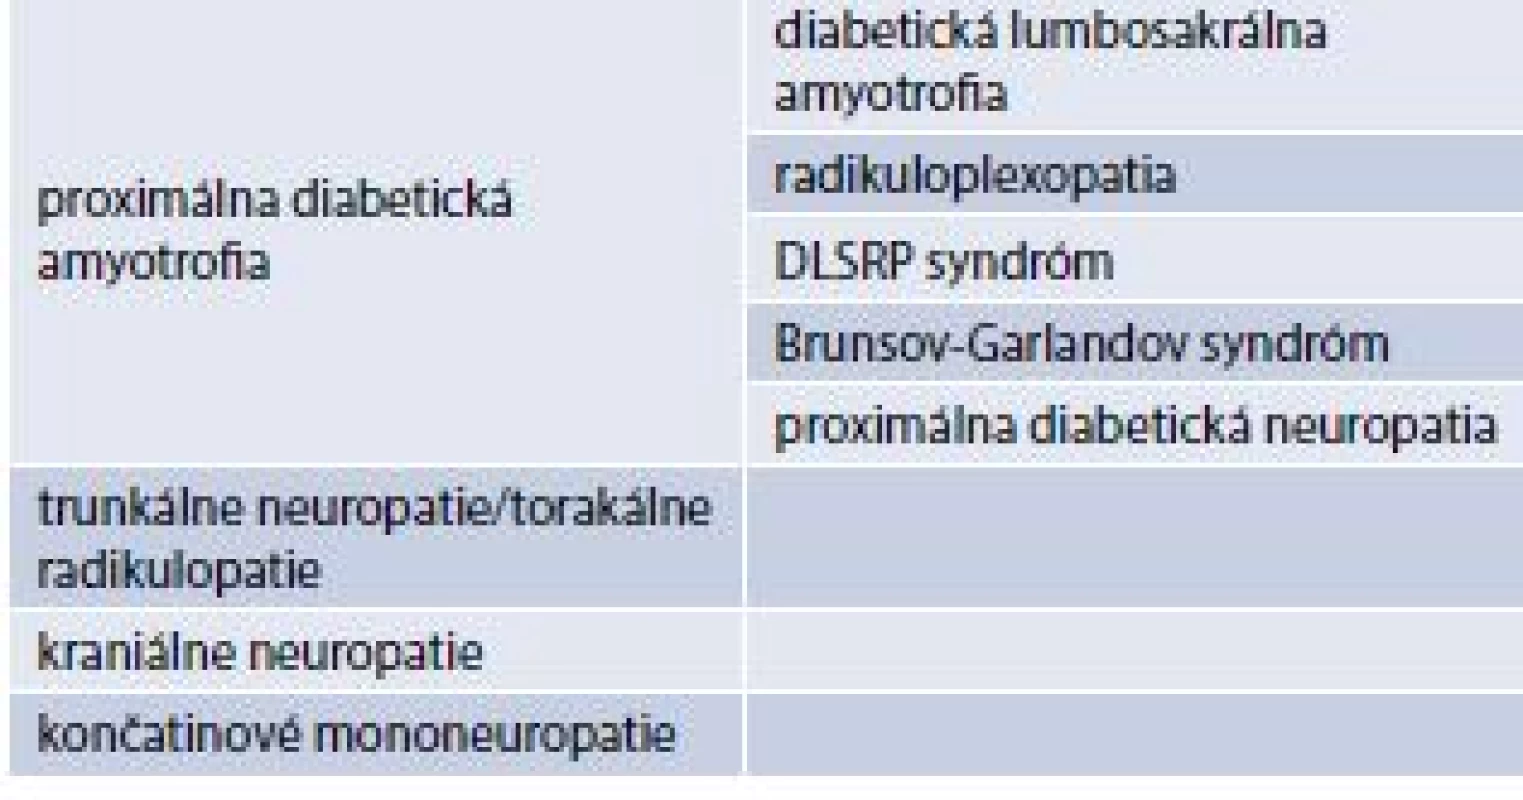 Klasifikácia asymetrických foriem
diabetickej neuropatie (fokálnych
a multifokálnych). Upravené podľa [14]